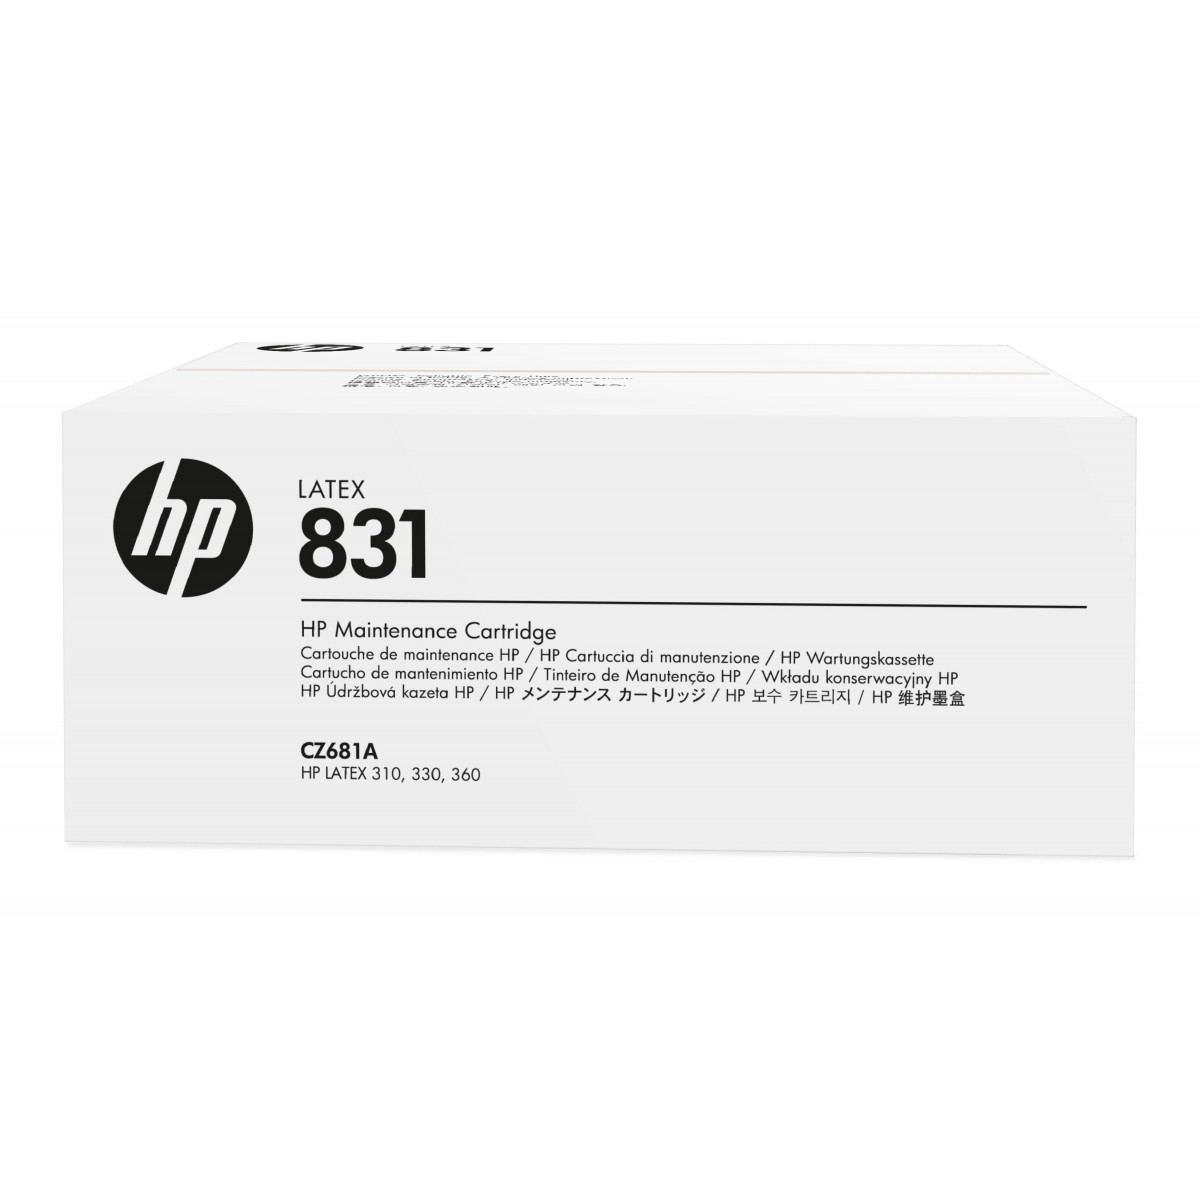 HP 831 Latex Maintenance Cartridge - HP - Inkjet - HP Latex 110 Printer - HP Latex 310 Printer - HP Latex 330 Printer - HP Latex